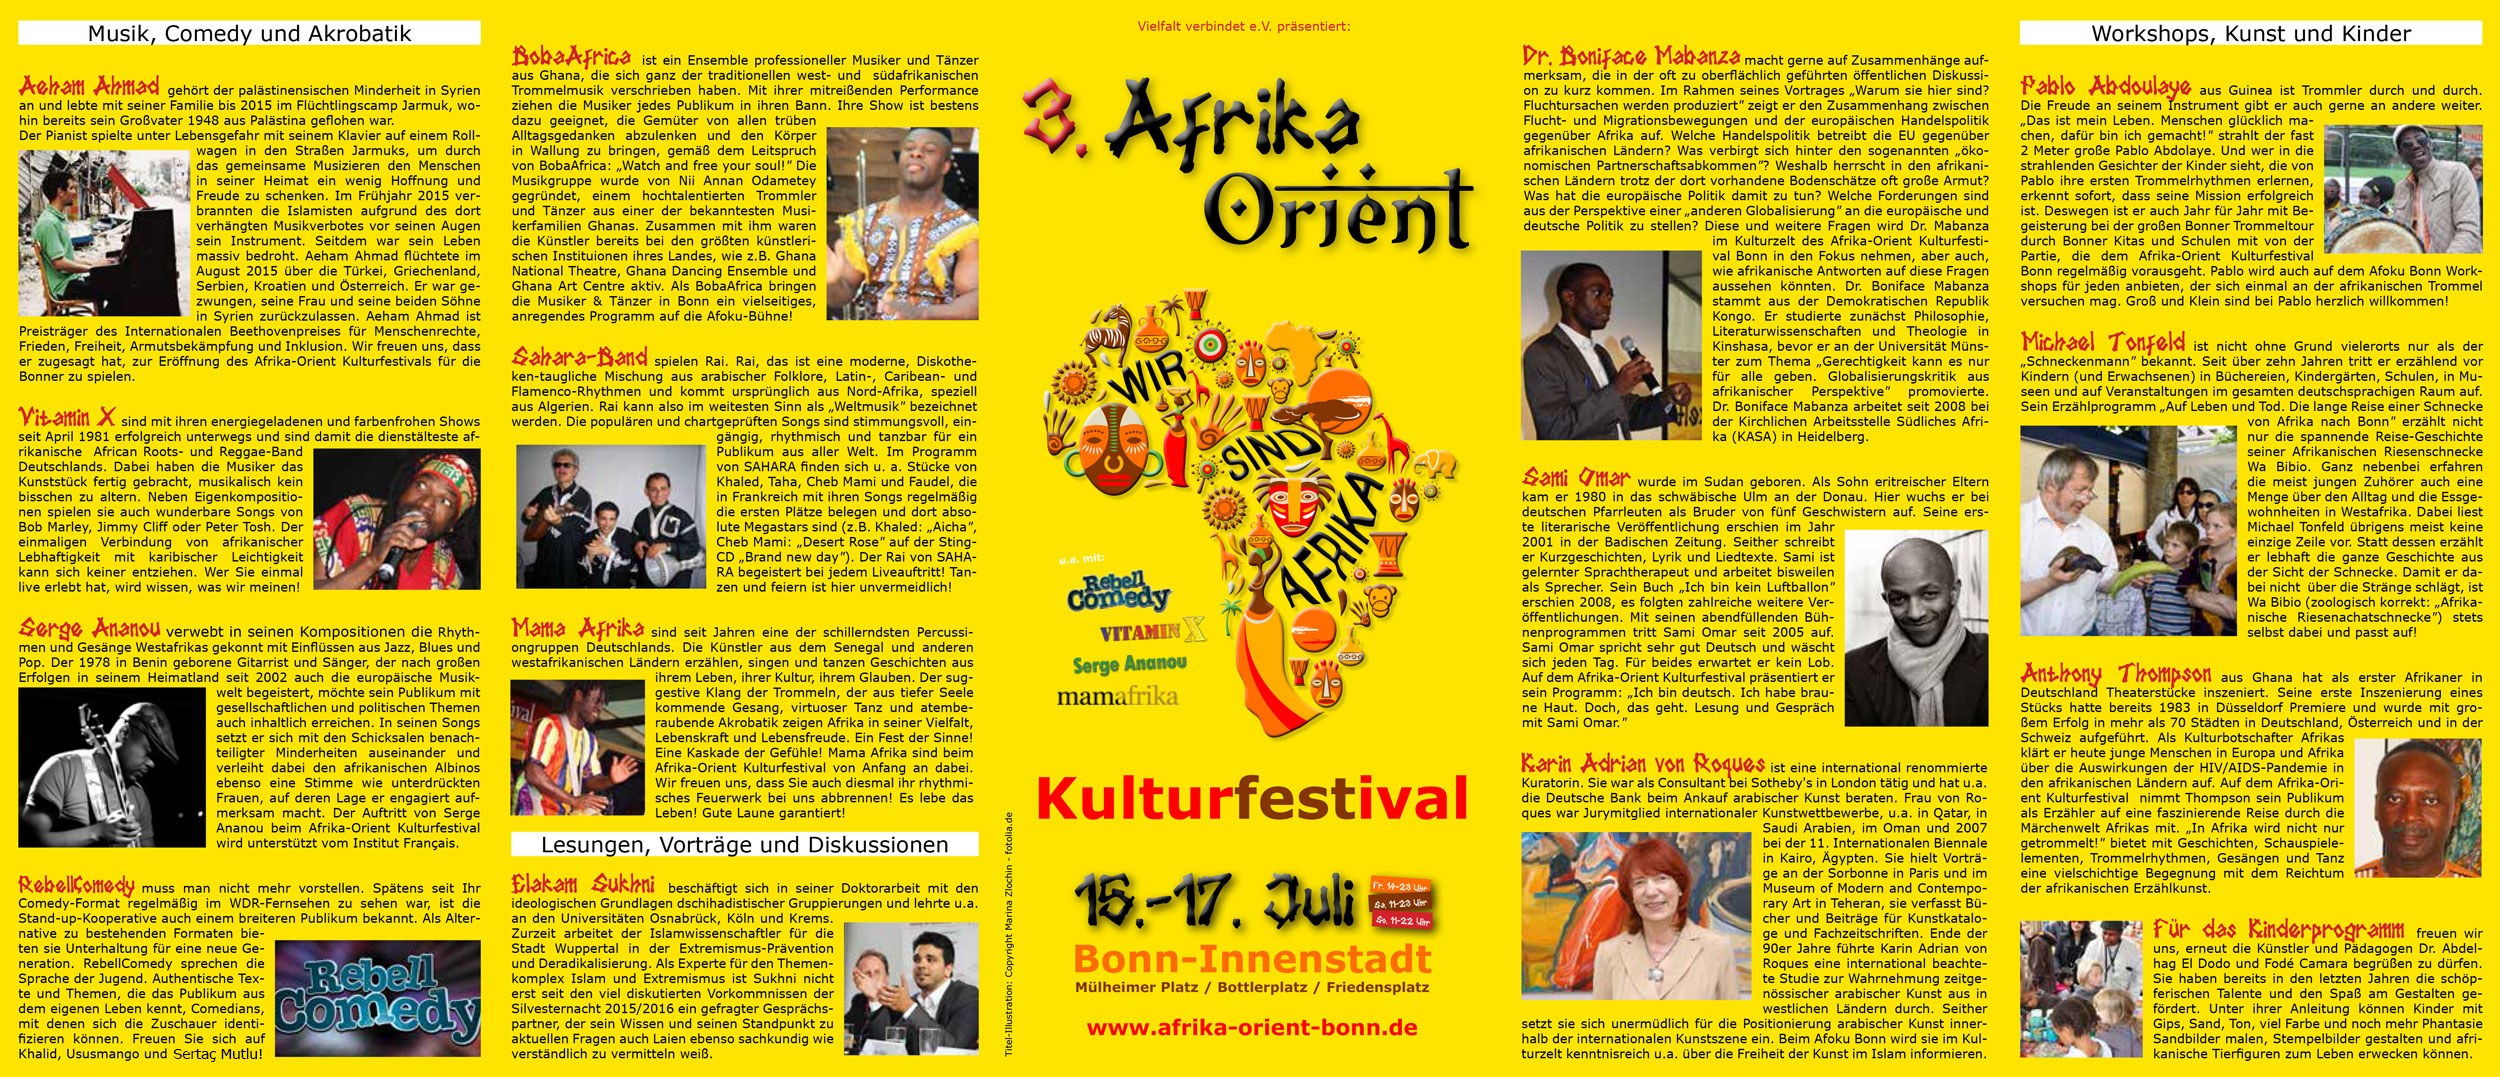 Faltblatt zum Festival, Seite 1